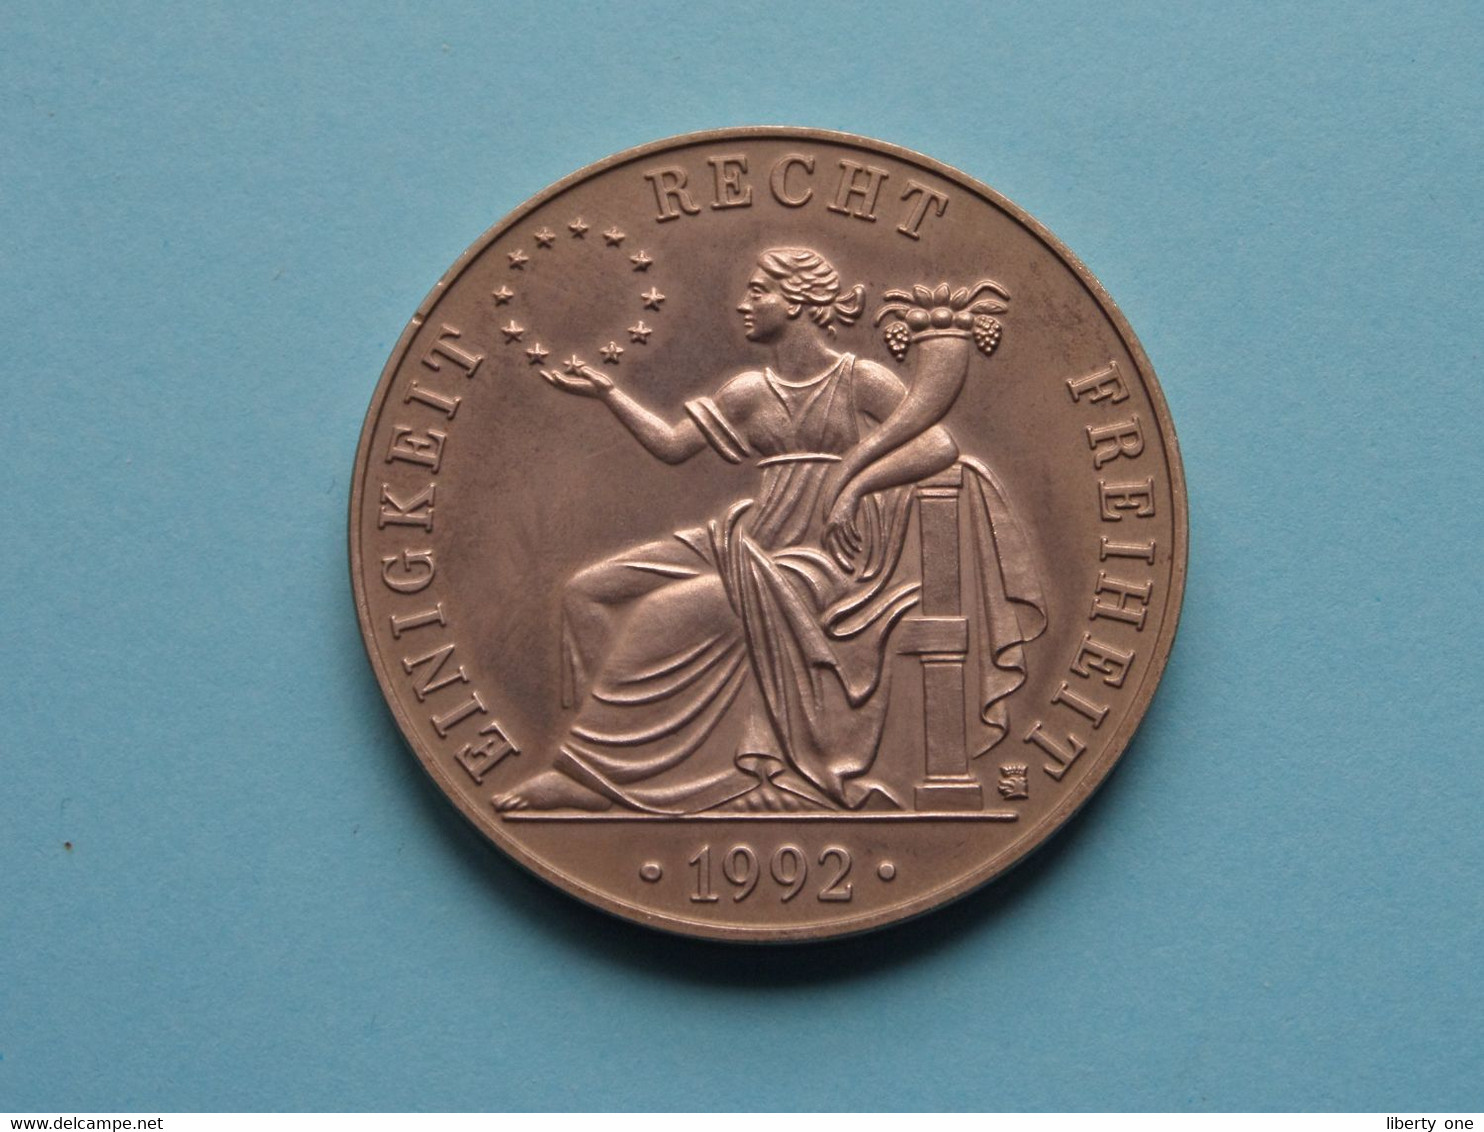 1992 > ECU DEUTSCHLAND - EUROPA Einigkeit / Recht / Freiheit ( For Grade, Please See Photo ) ! - Souvenirmunten (elongated Coins)